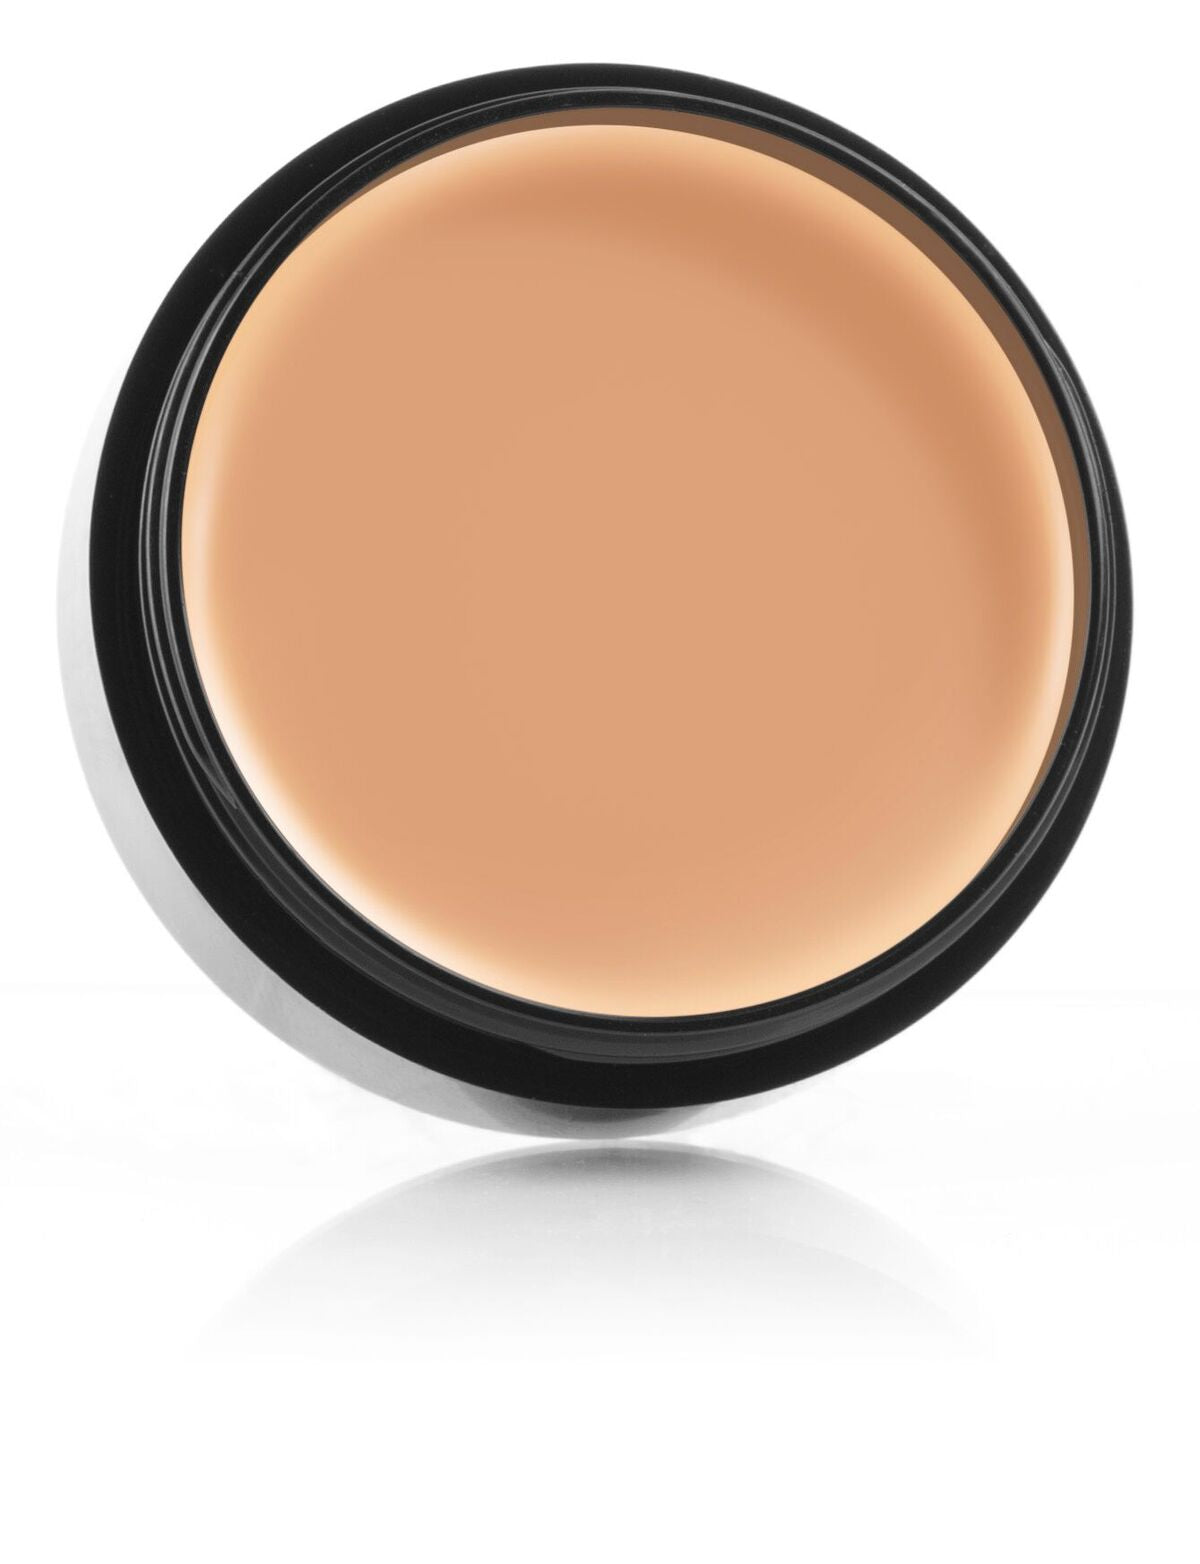 Mehron Makeup Celebre Pro HD Cream Foundation - Medium 4 - ADDROS.COM